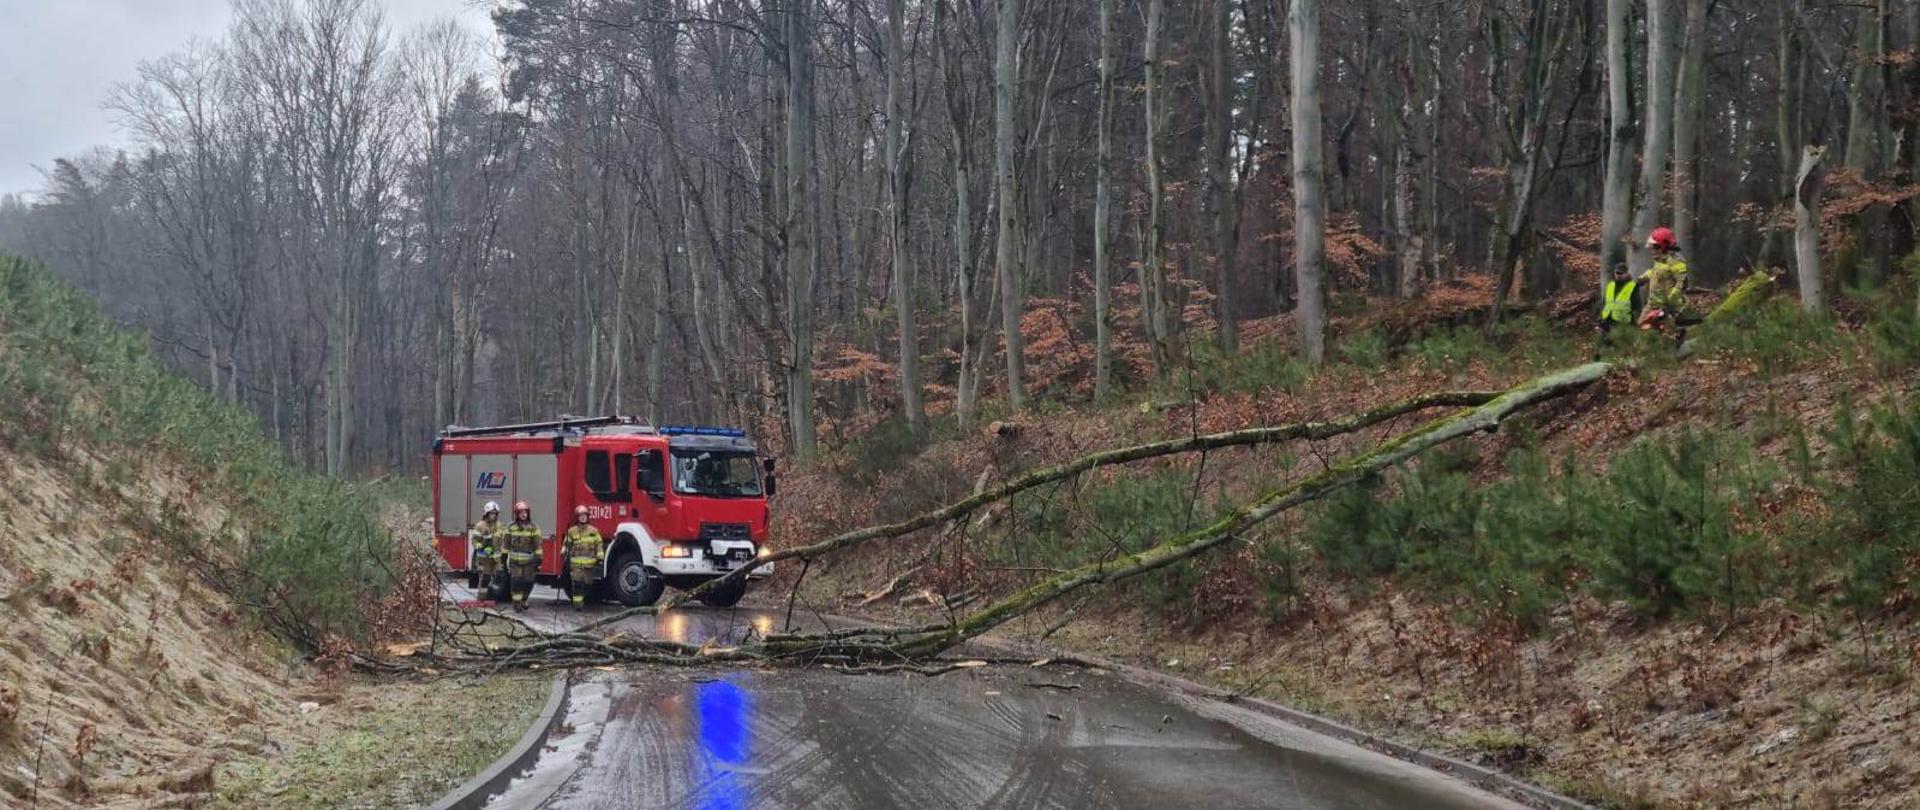 Drzewo przewrócone na drogę strażacy stoją samochodem gaśniczym i udają się w kierunku obiektu.